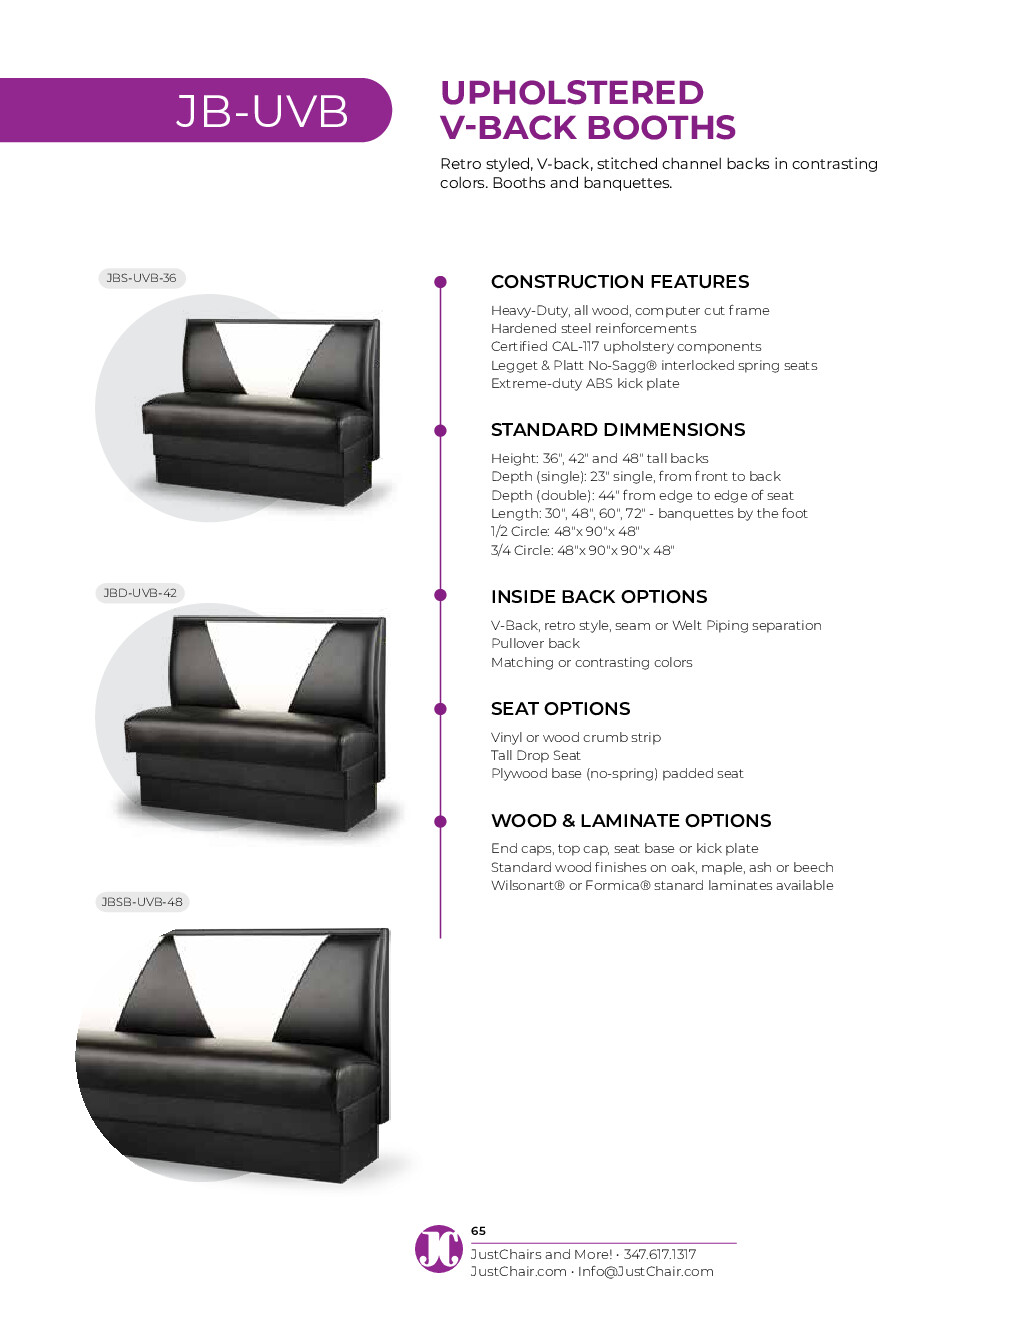 JustChair JBS-UVB-48-GR1/COM Custom Booth, Single V Back, Upholstered Seat, 48